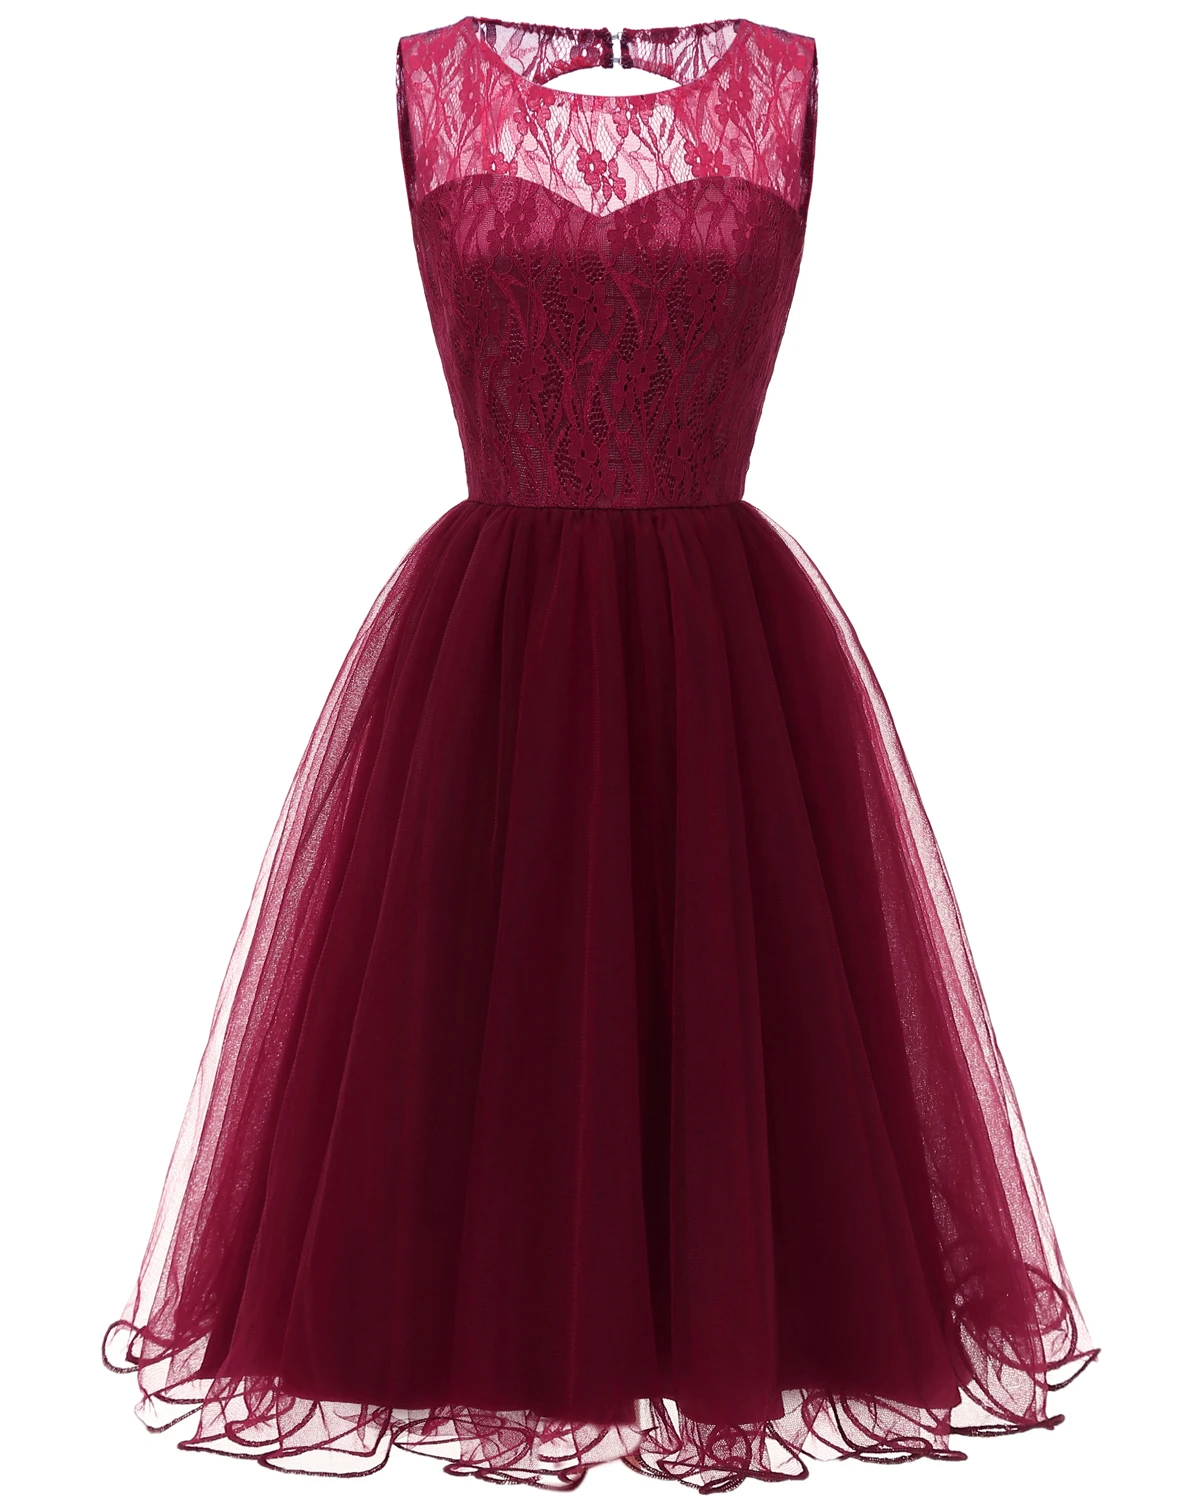 Eveningdress Новое ажурное кружевное винтажное платье-американка осень-зима коктейльное платье Коллекция темно-синий розовый винный красный